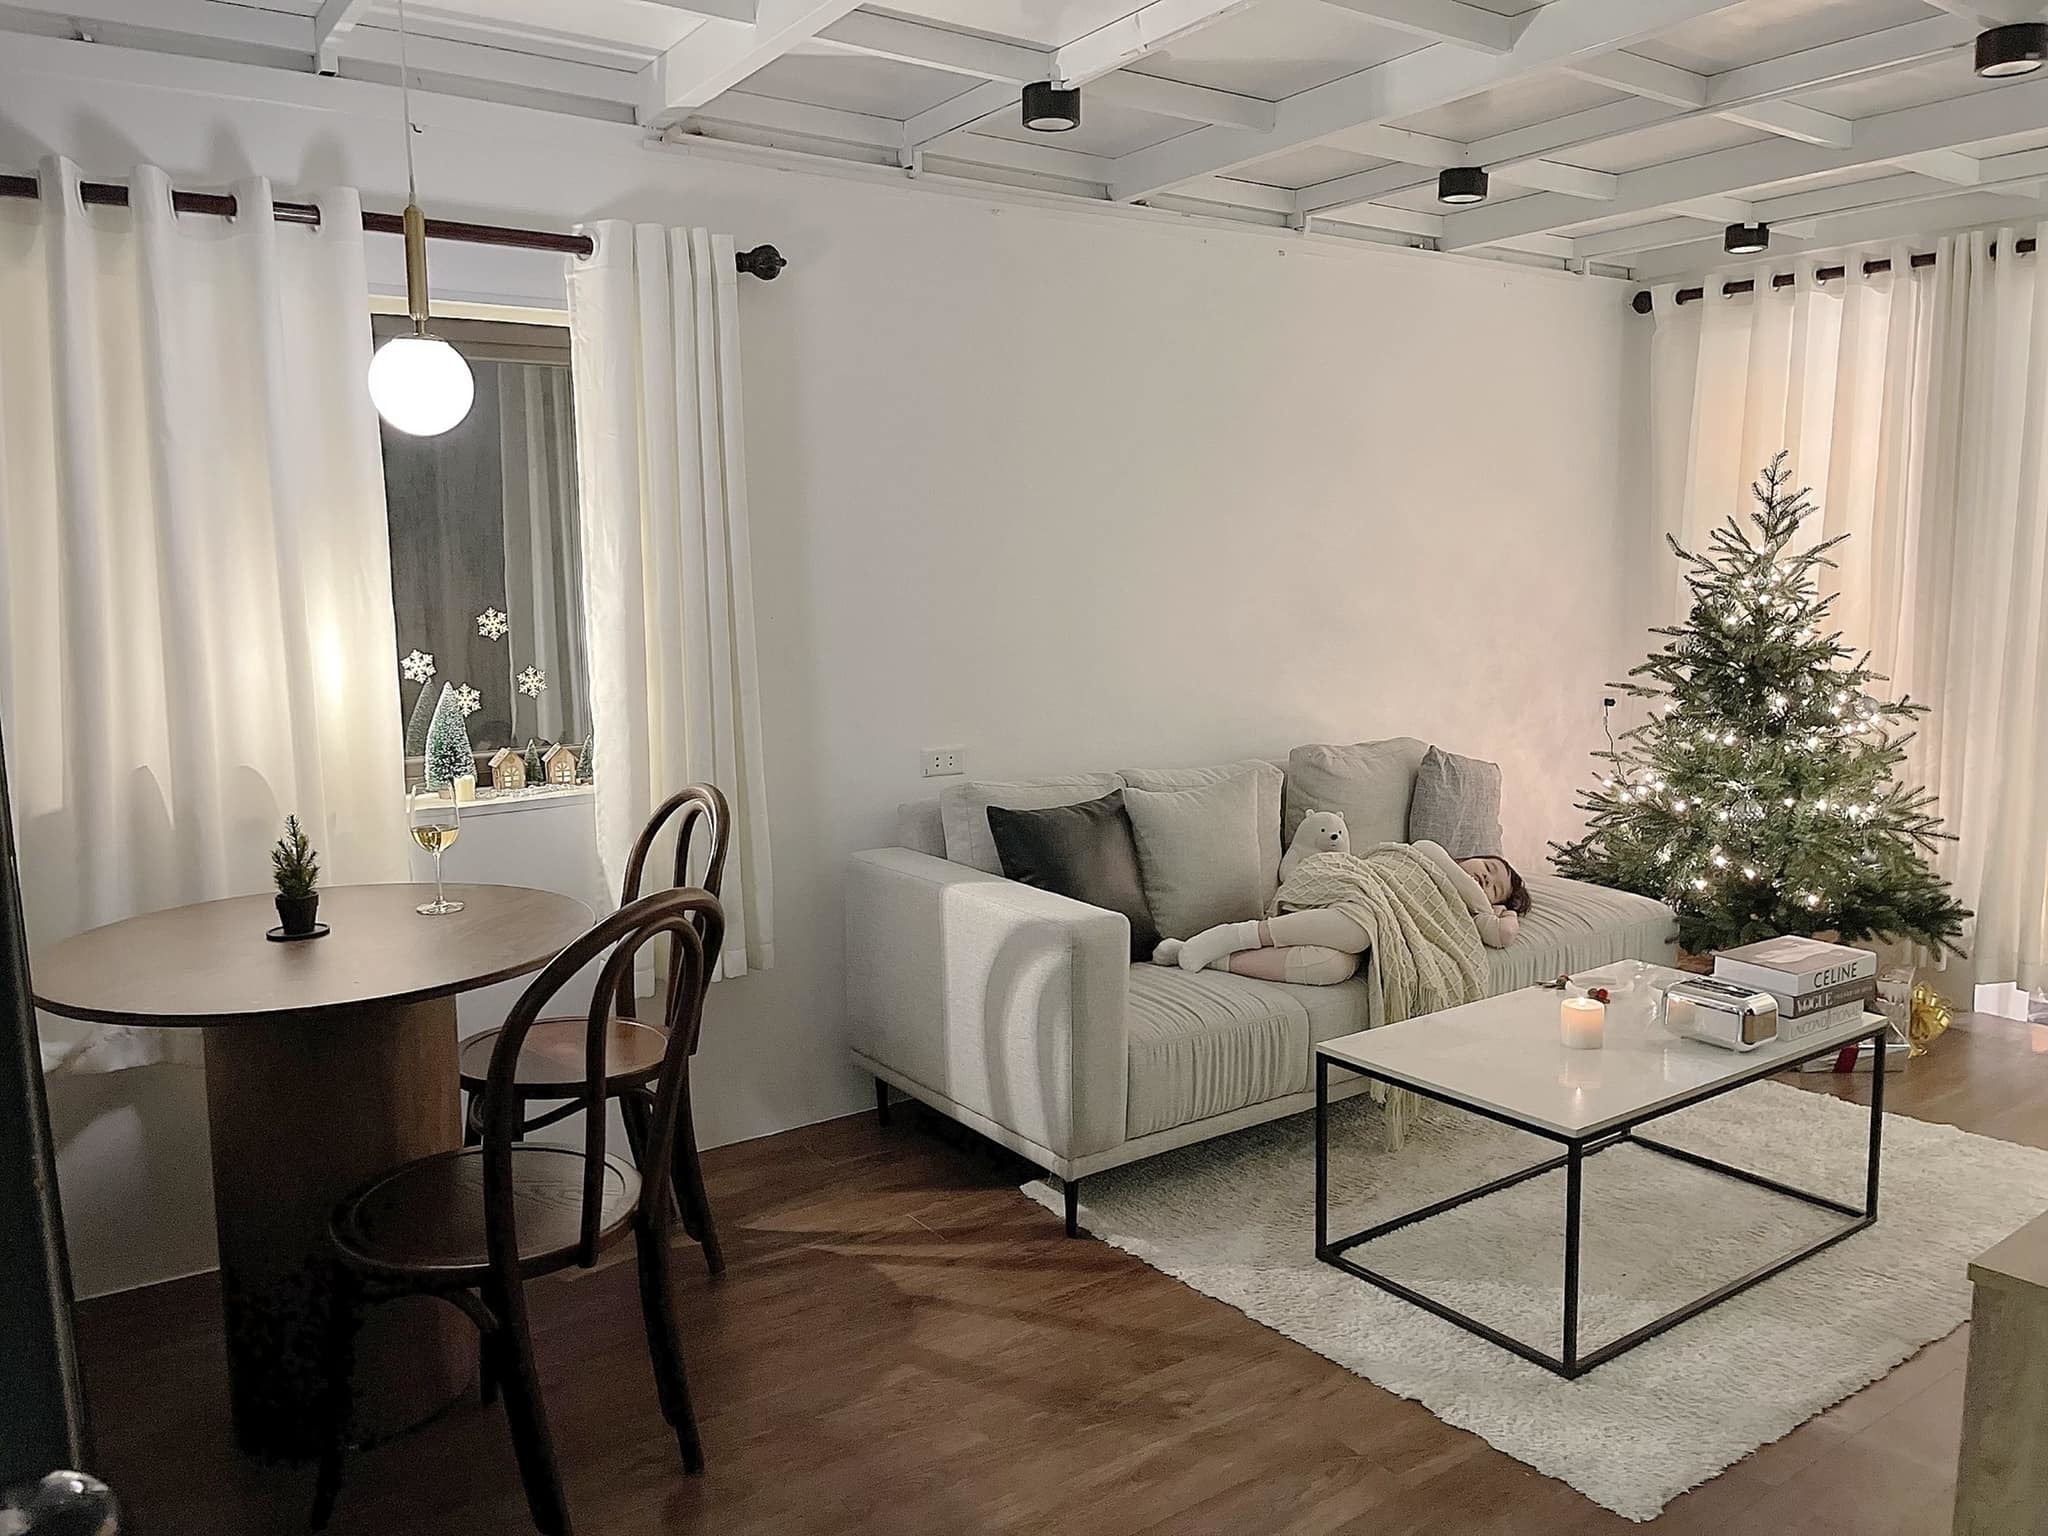 Trang trí nhà đón Giáng sinh đơn giản nhưng ấm cúng của bà mẹ một con Hải Phòng